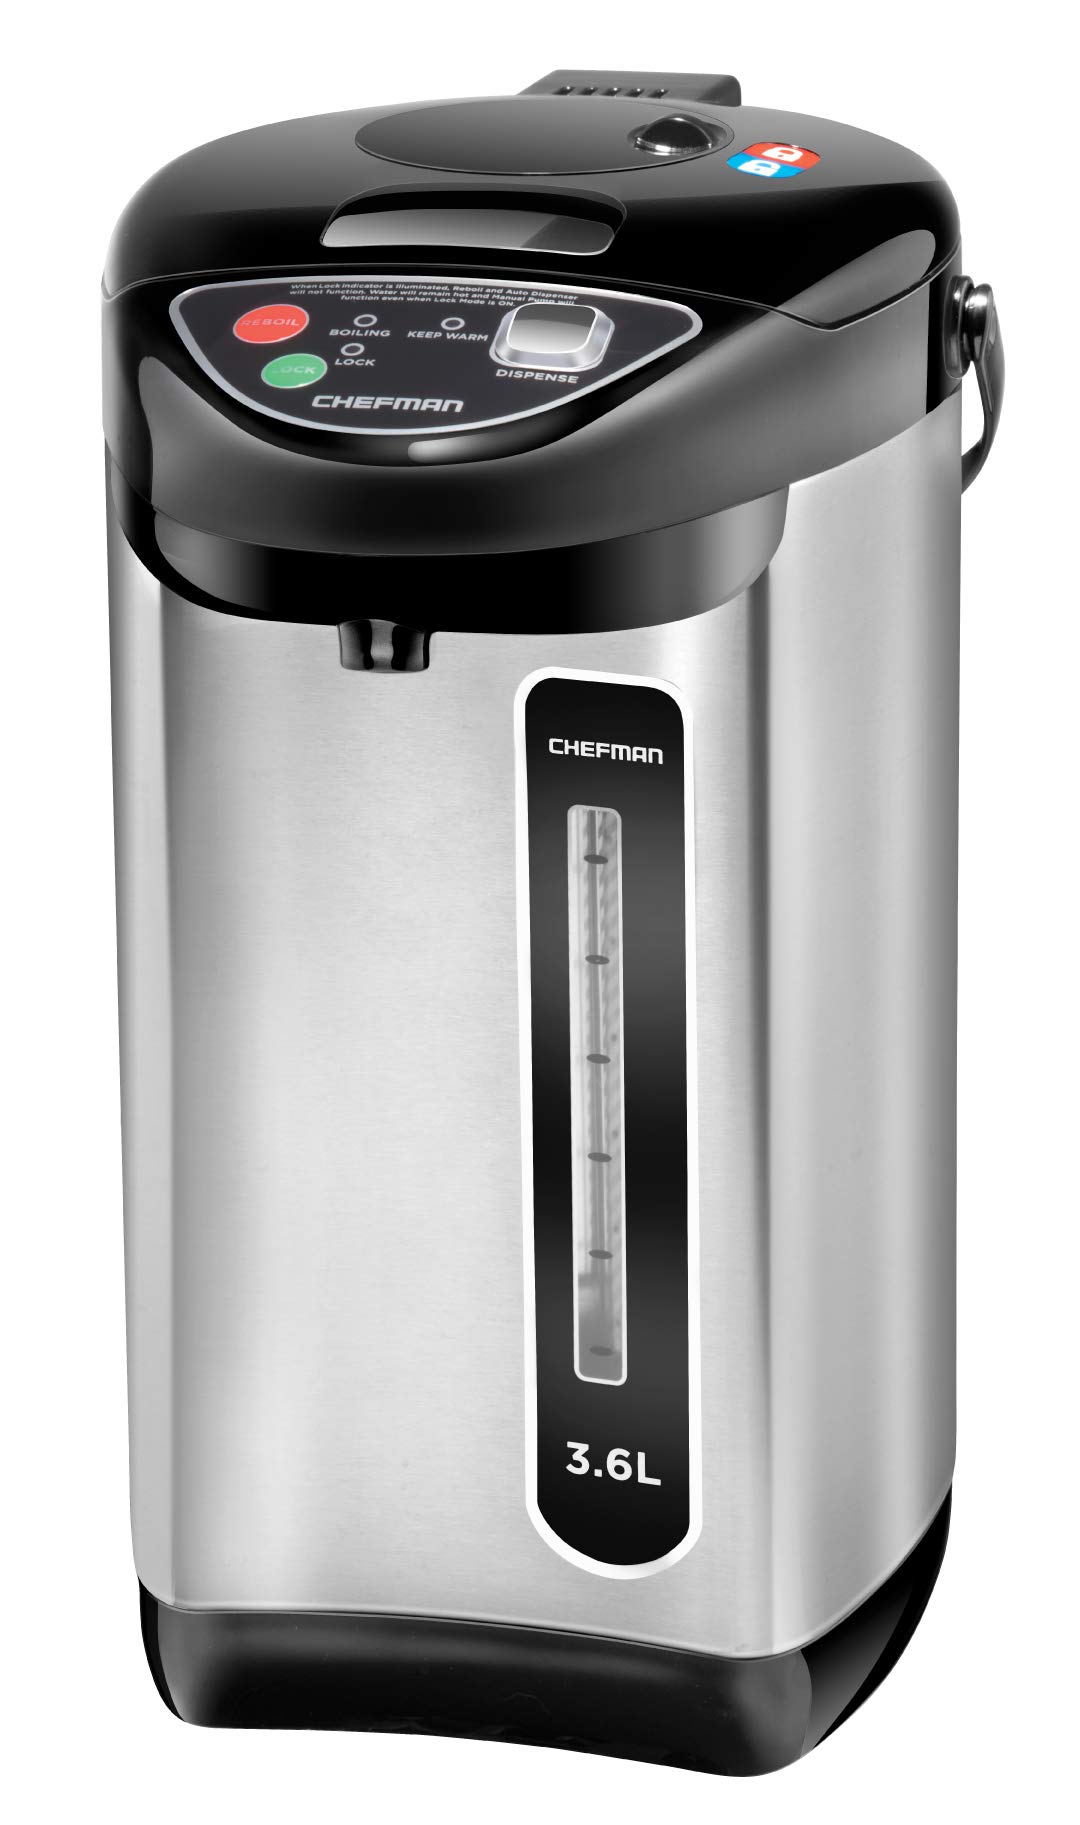 Chefman 自動および手動分配ボタン付き電気湯沸かしポット、安全ロック、コーヒーと紅茶の瞬間加熱、自動シャットオフ/空焚き保護